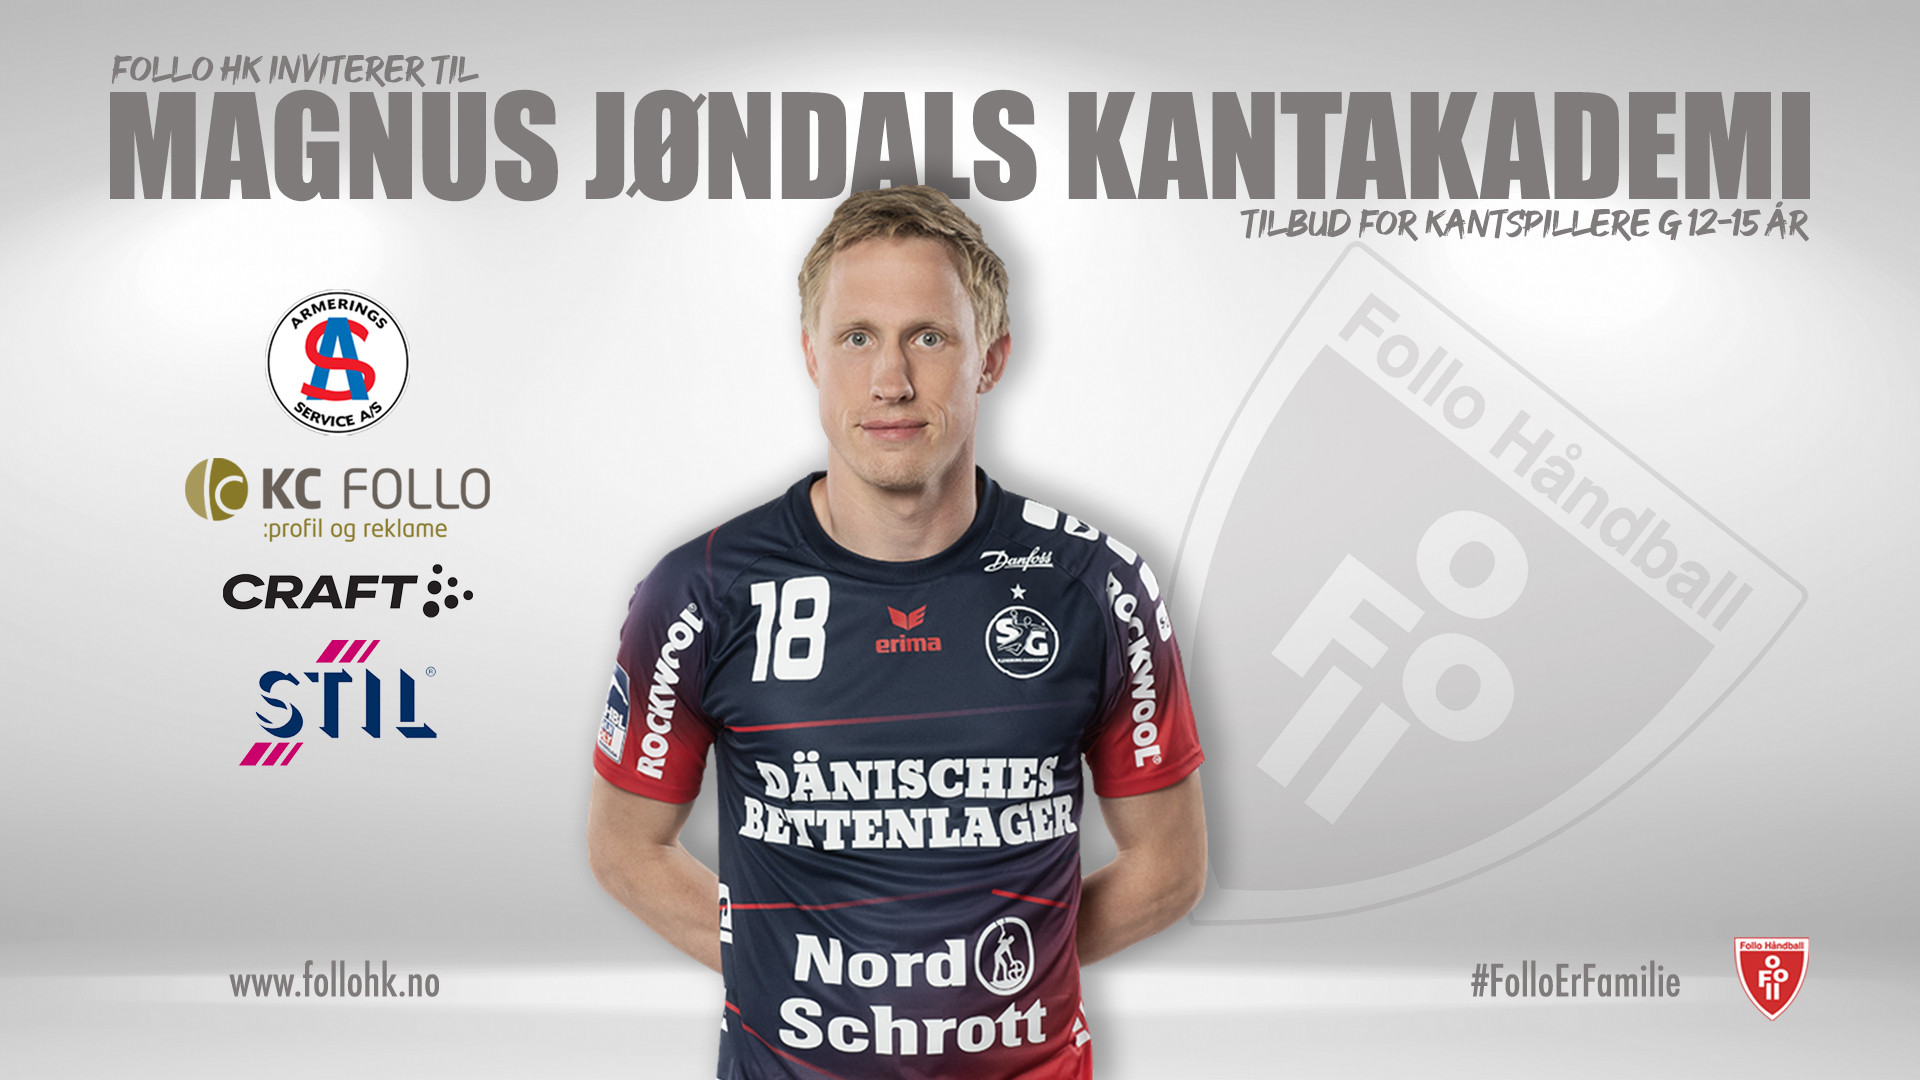 Jøndals Kantakademi